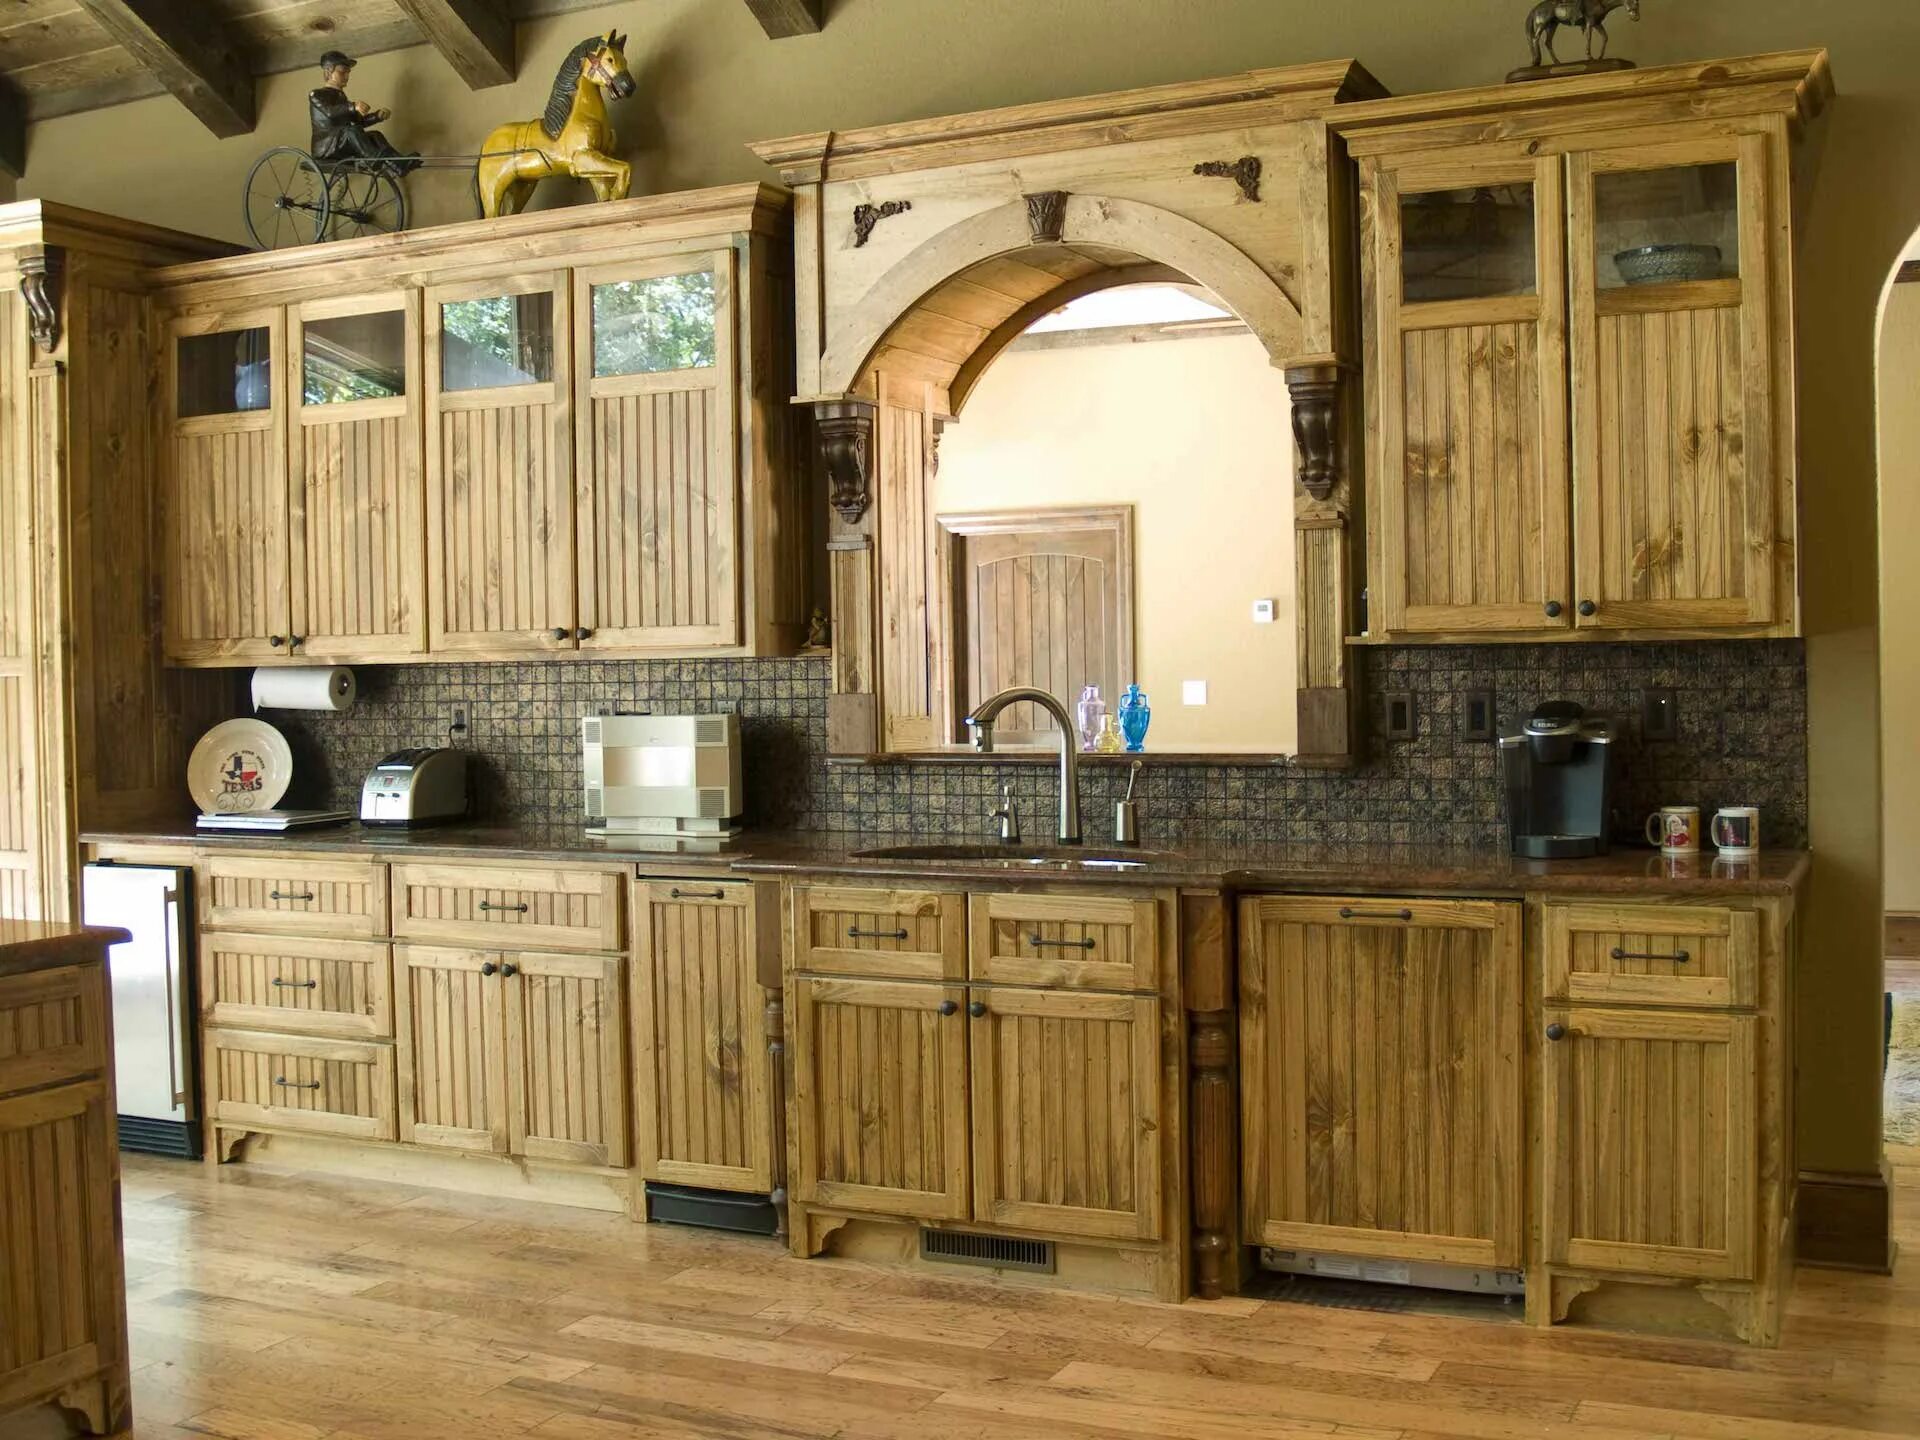 Фасад под старину. Деревянная кухня. Кухонные гарнитуры из дерева. Кухонные гарнитуры под старину. Деревянные кухни под старину.